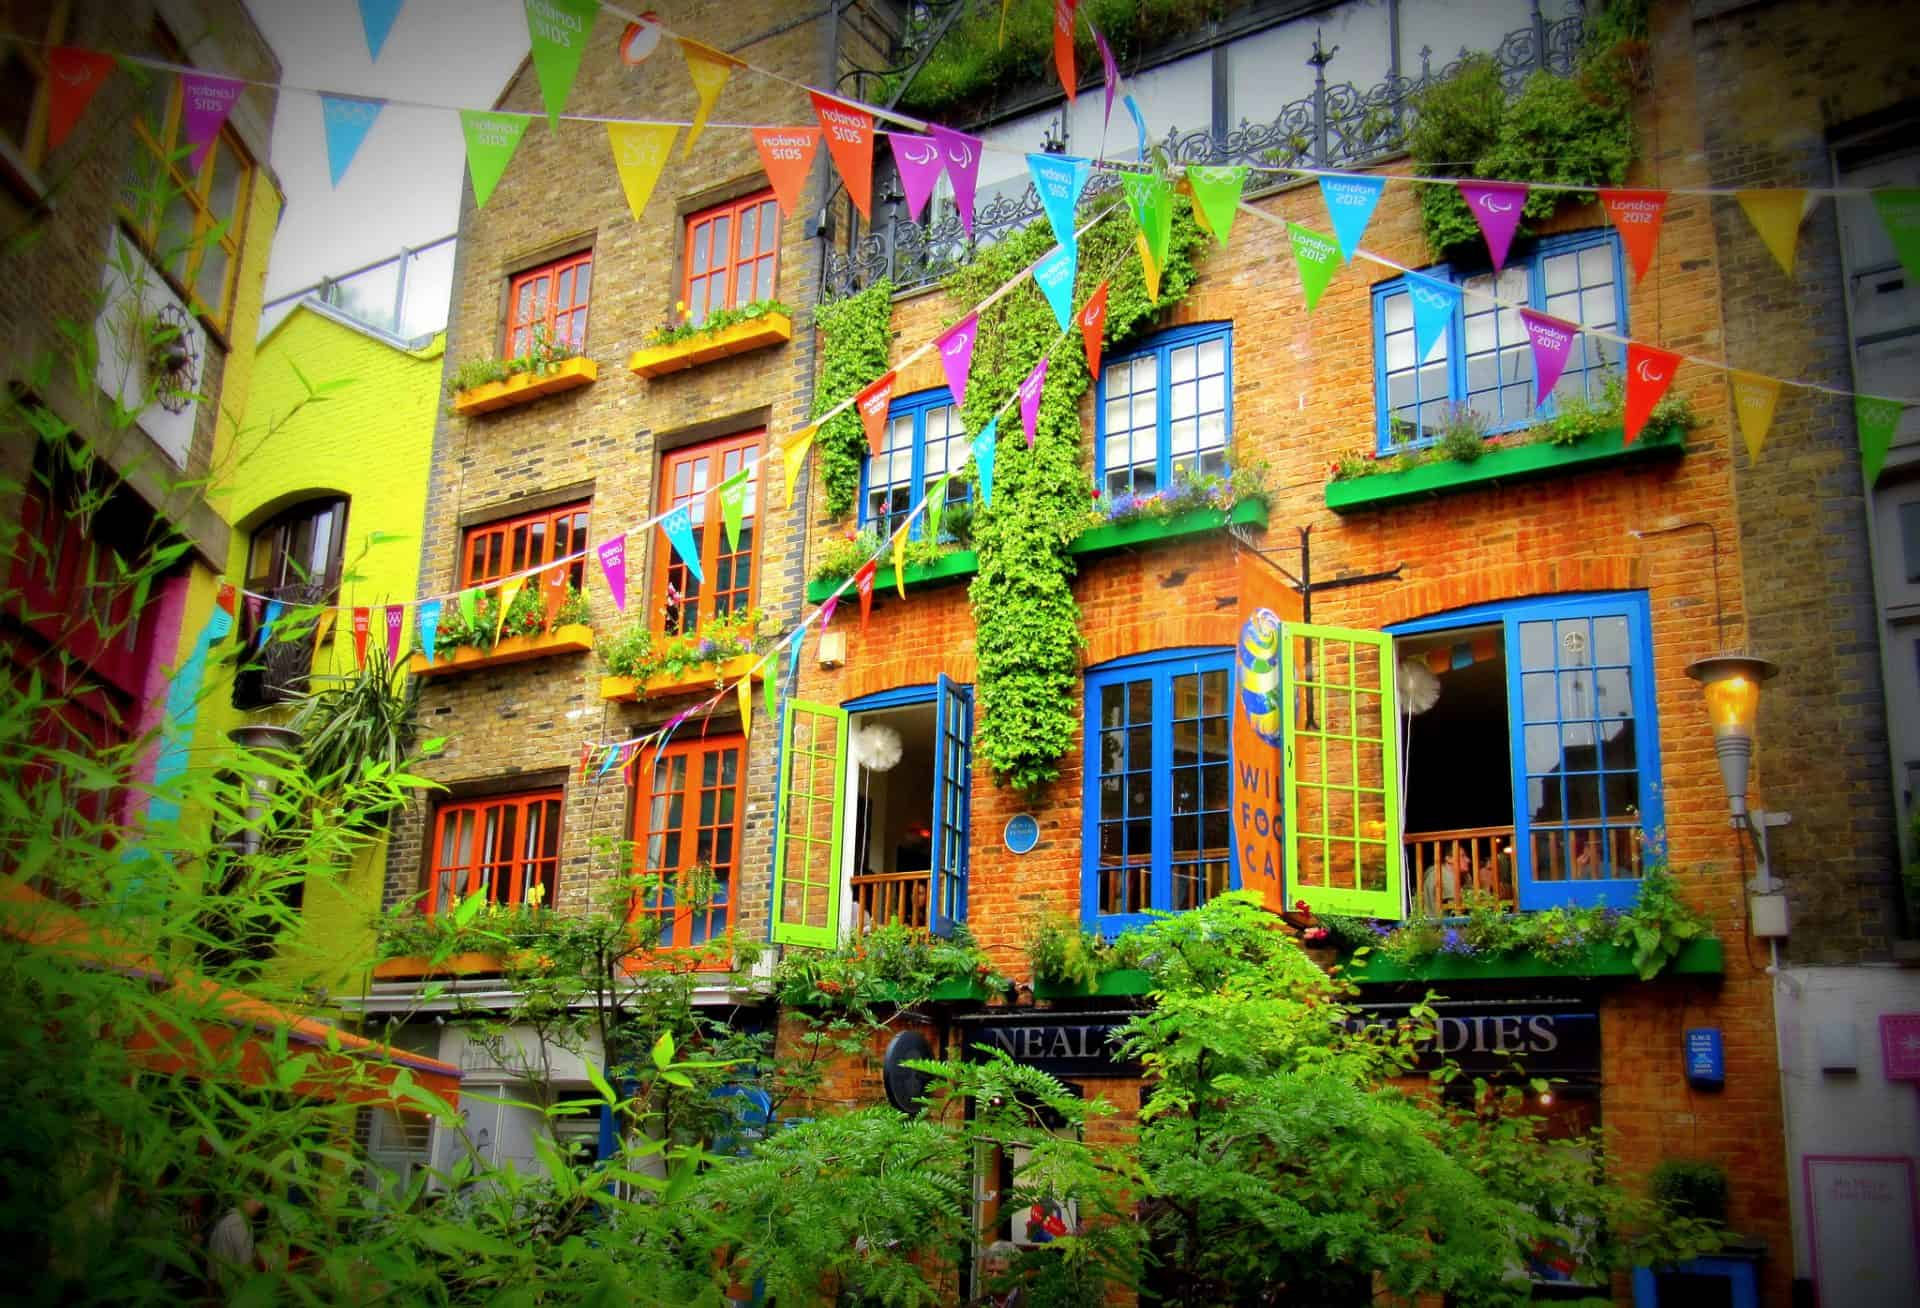 Descubra o Neal’s Yard, um escondido, colorido e charmoso beco em Londres